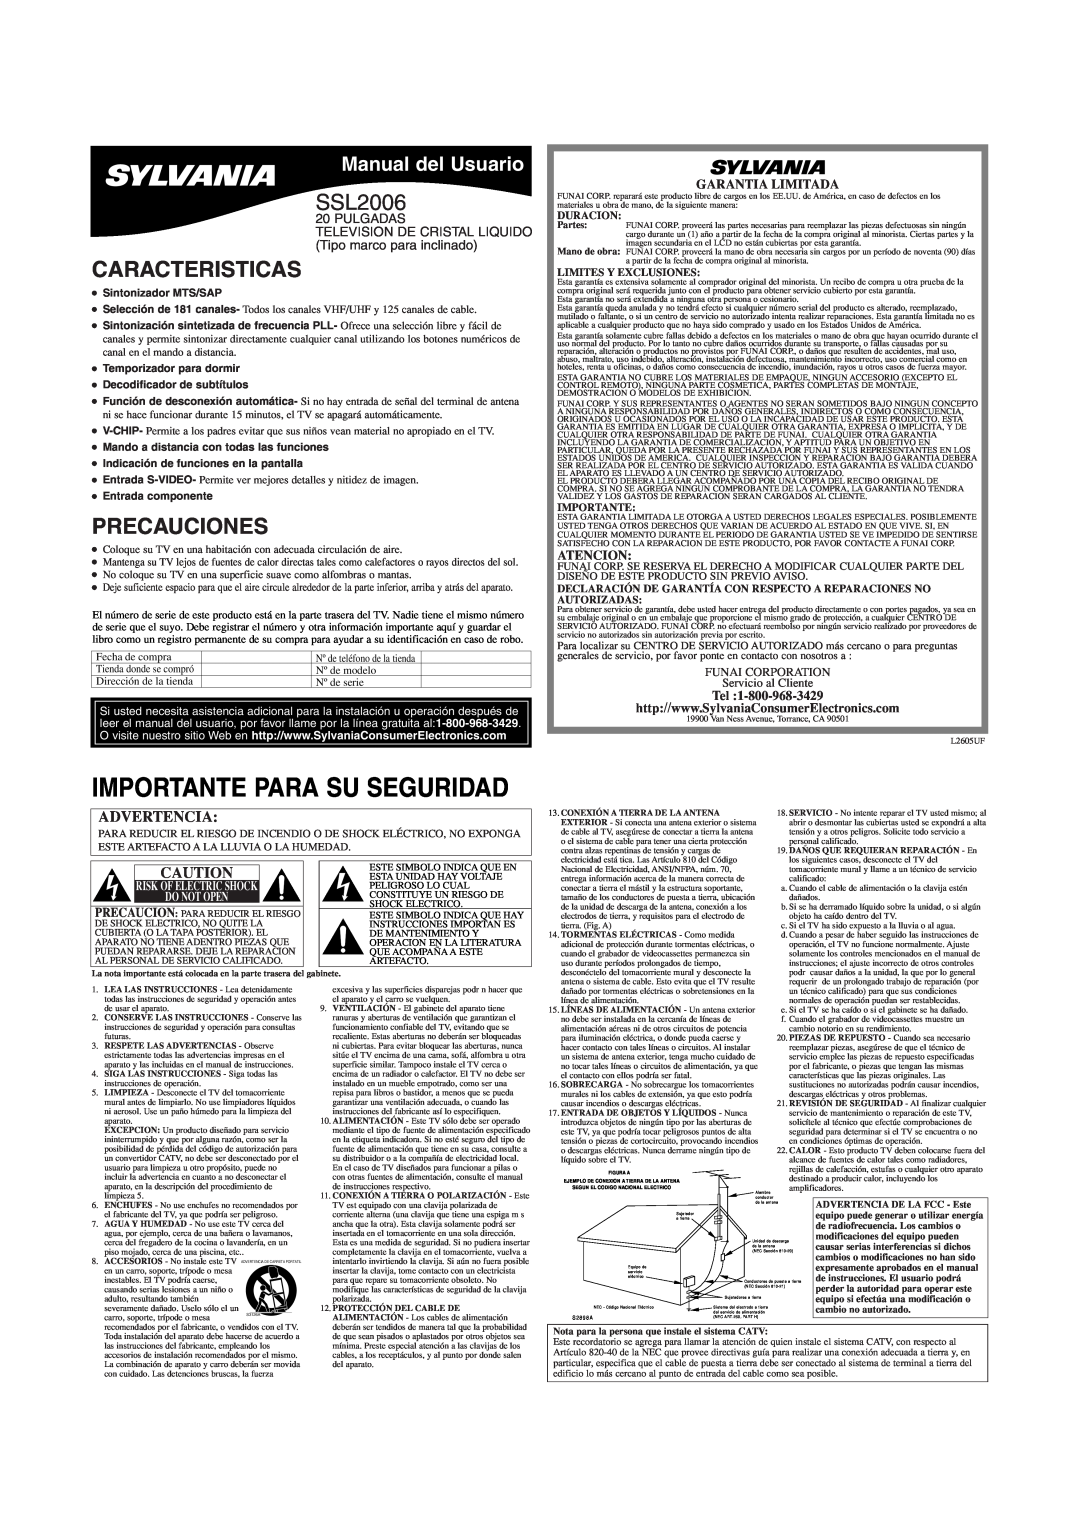 Sylvania SSL2006 Caracteristicas, Precauciones, Manual del Usuario, Garantia Limitada, Atencion, Duracion, Importante 